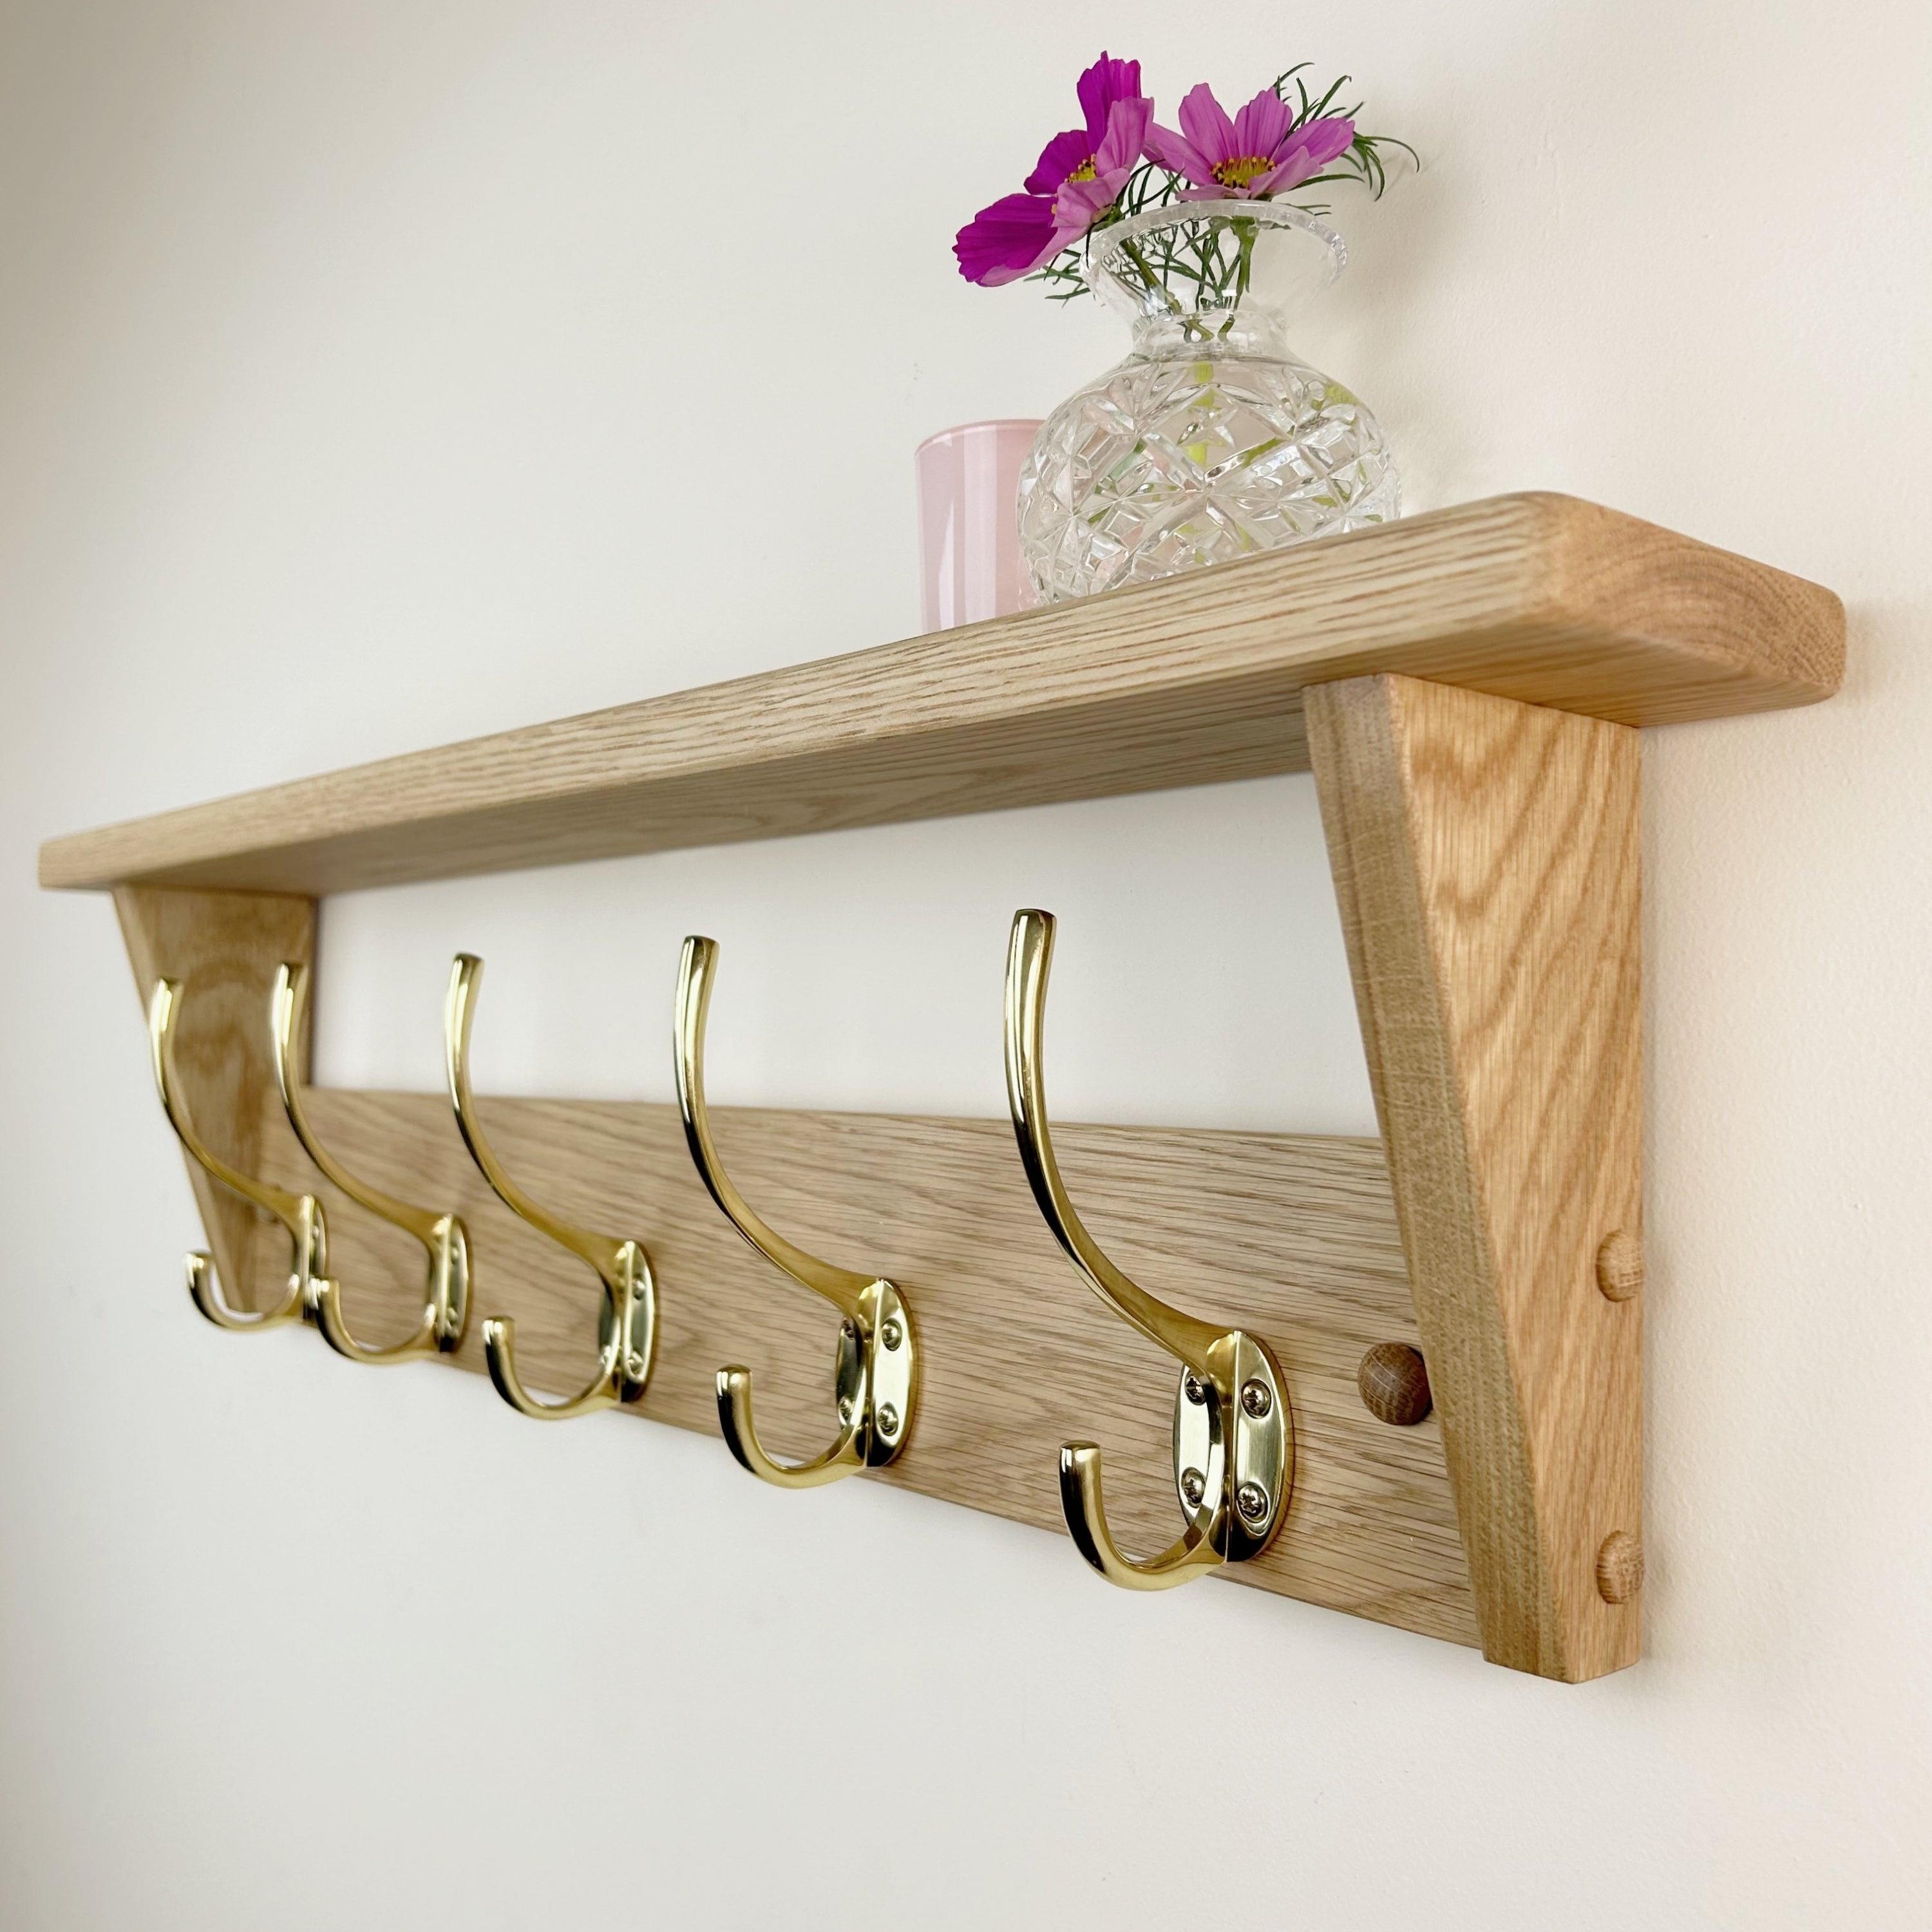 Oak coat rack with shelf - polished brass hooks – Old Oak Barrel